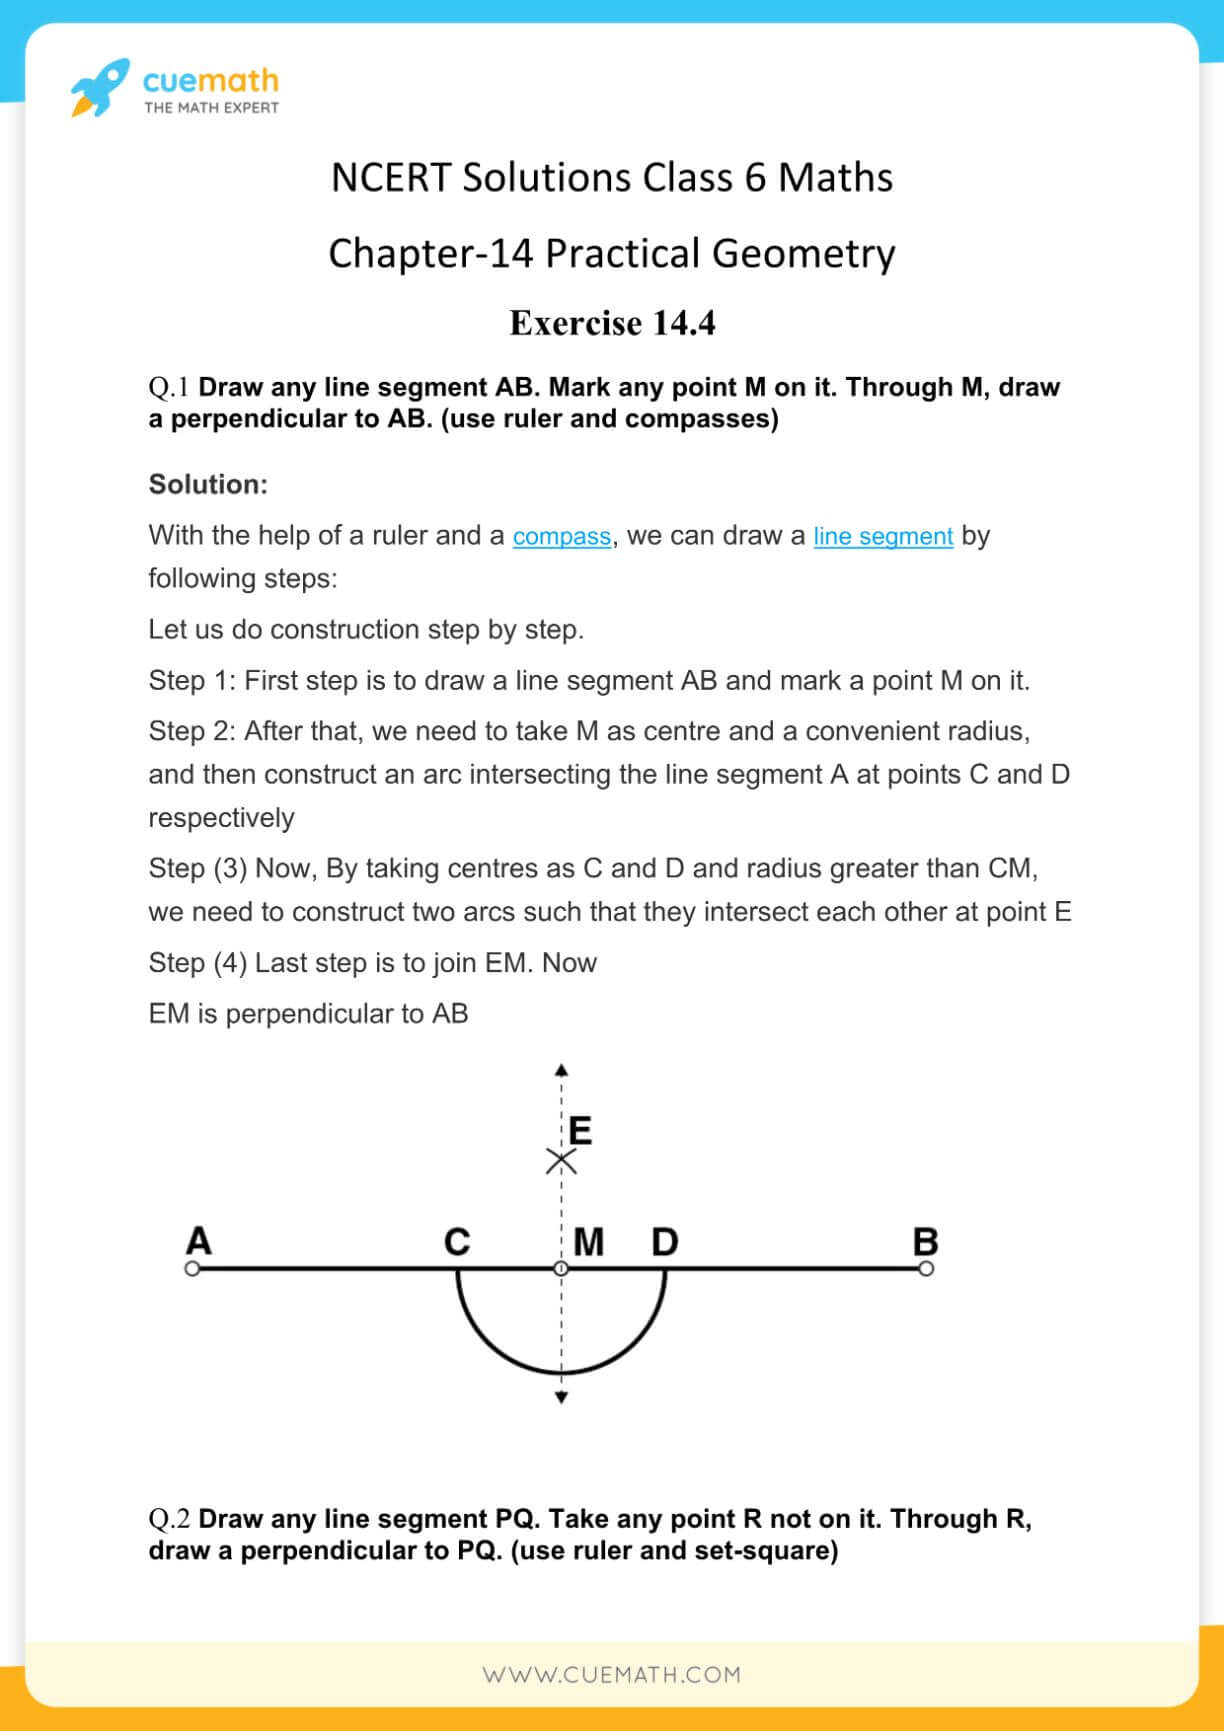 NCERT Solutions Class 6 Maths Chapter 14-11